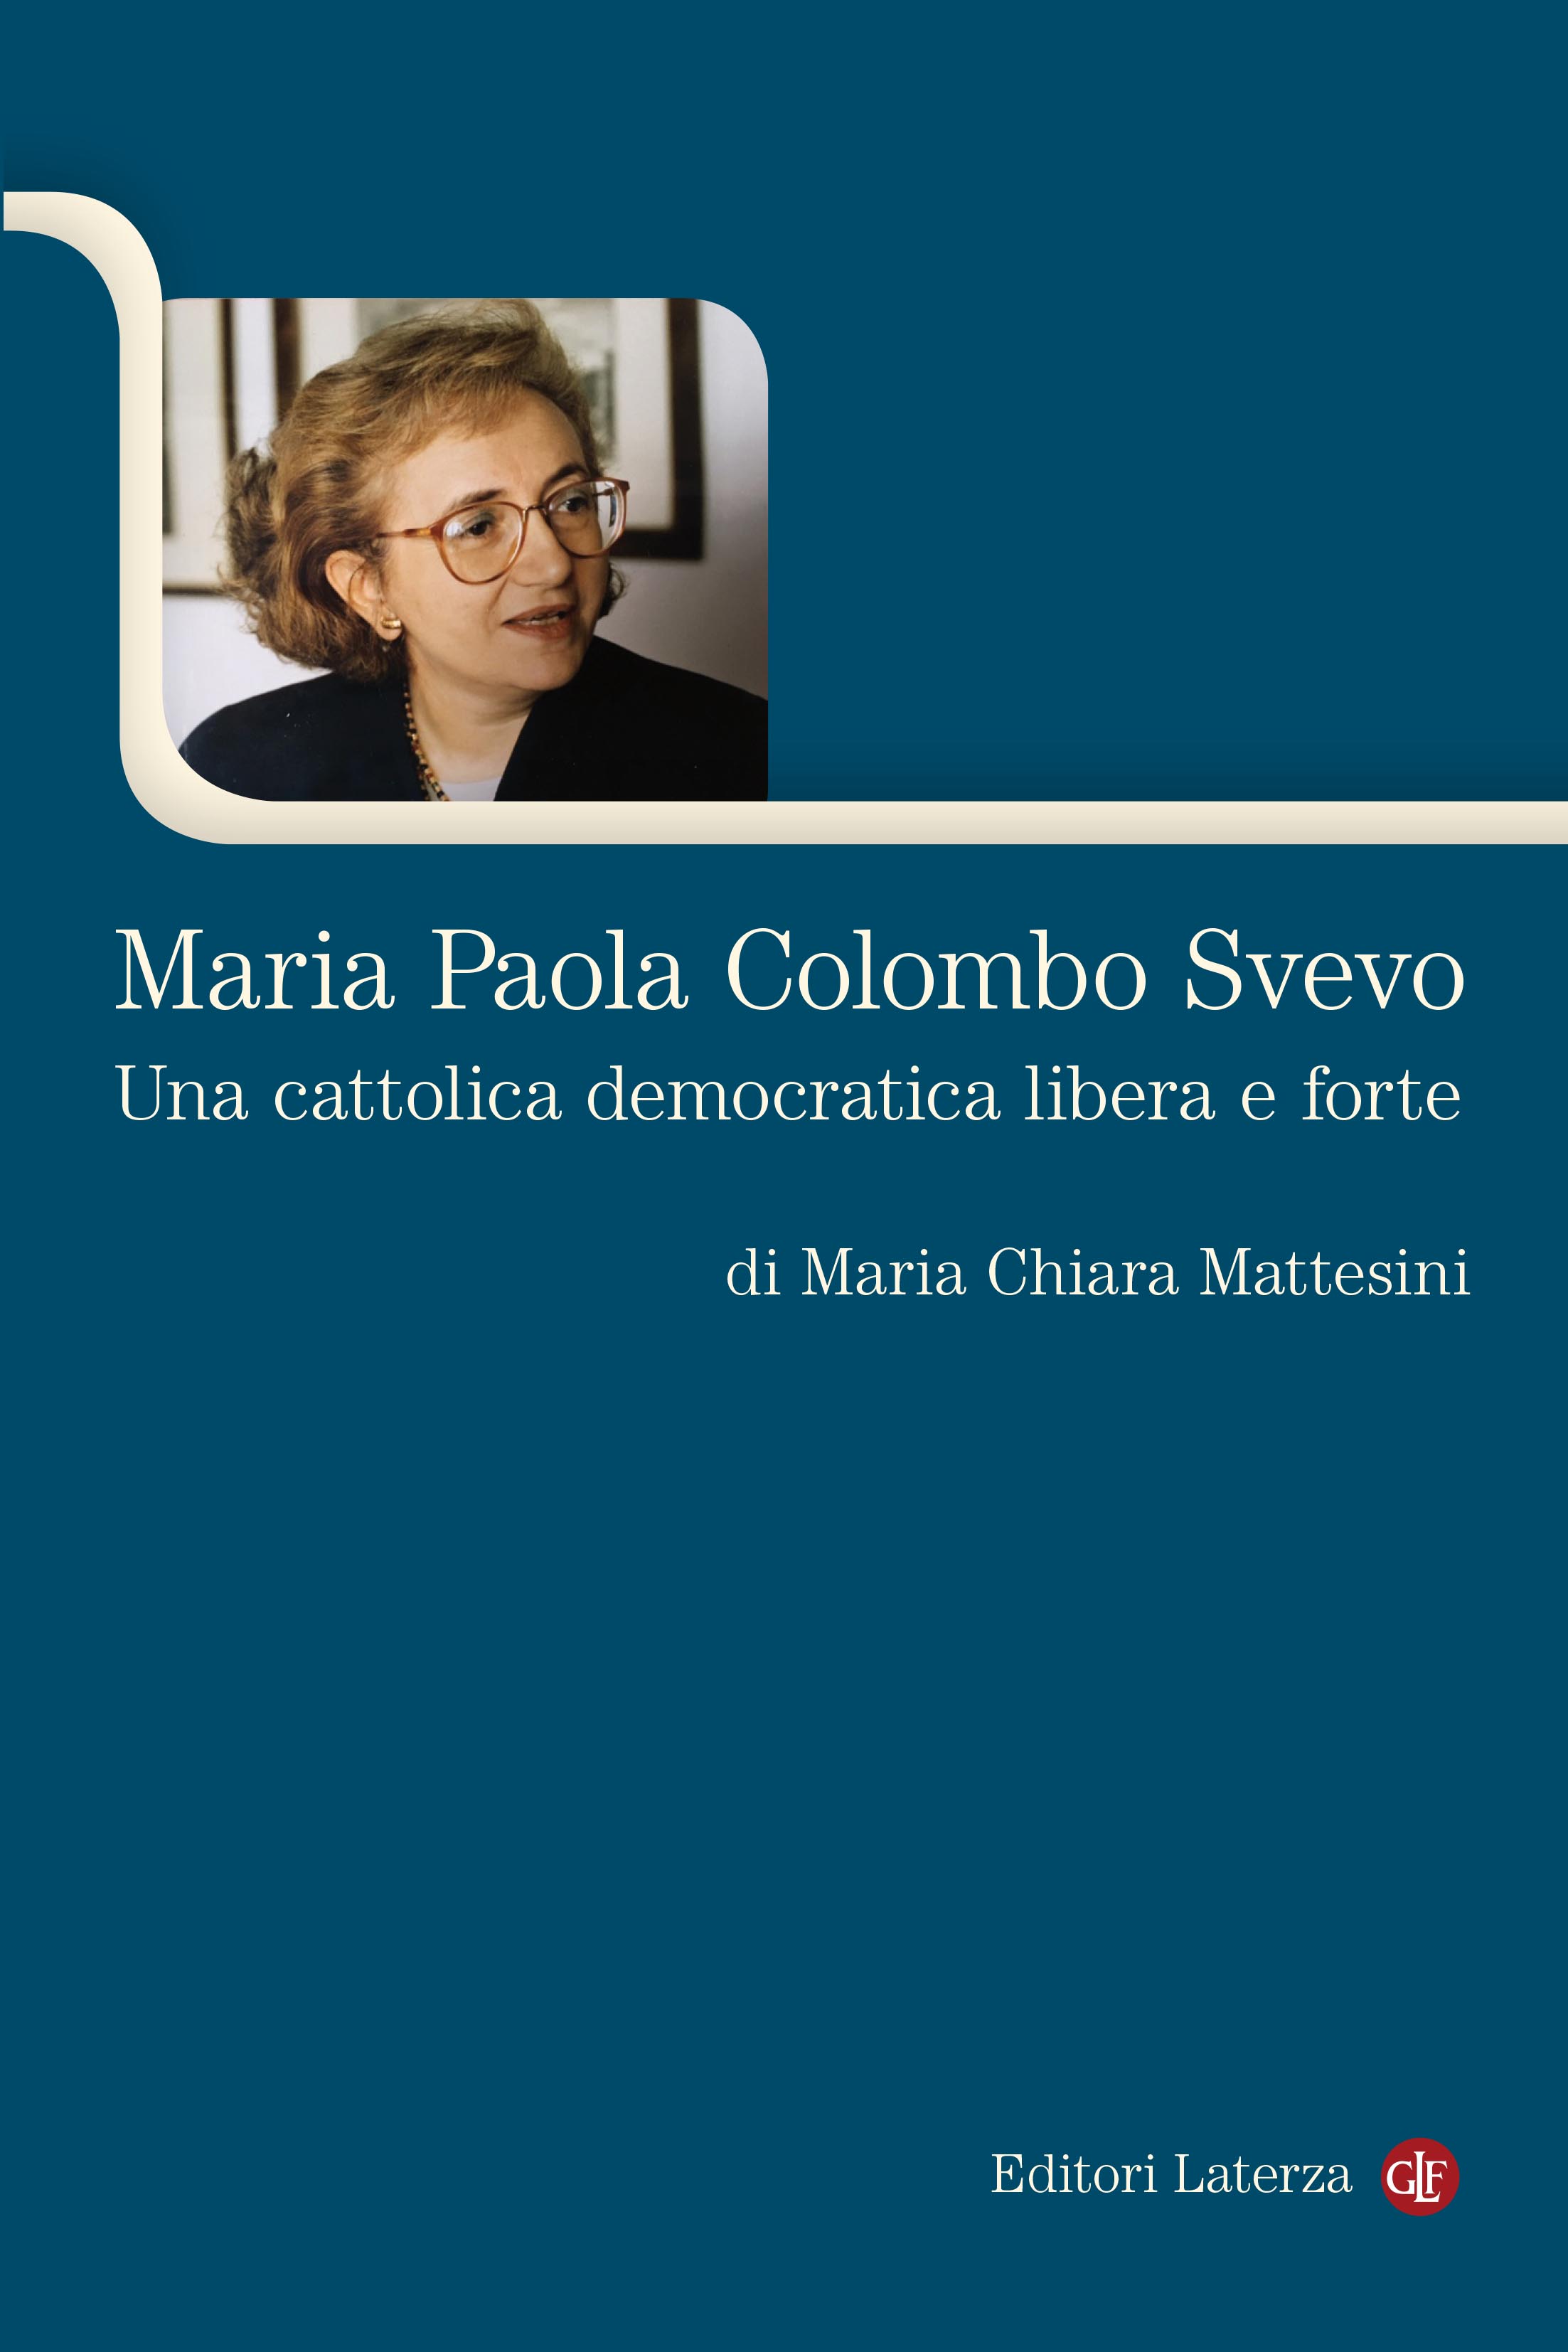 Maria Paola Colombo Svevo